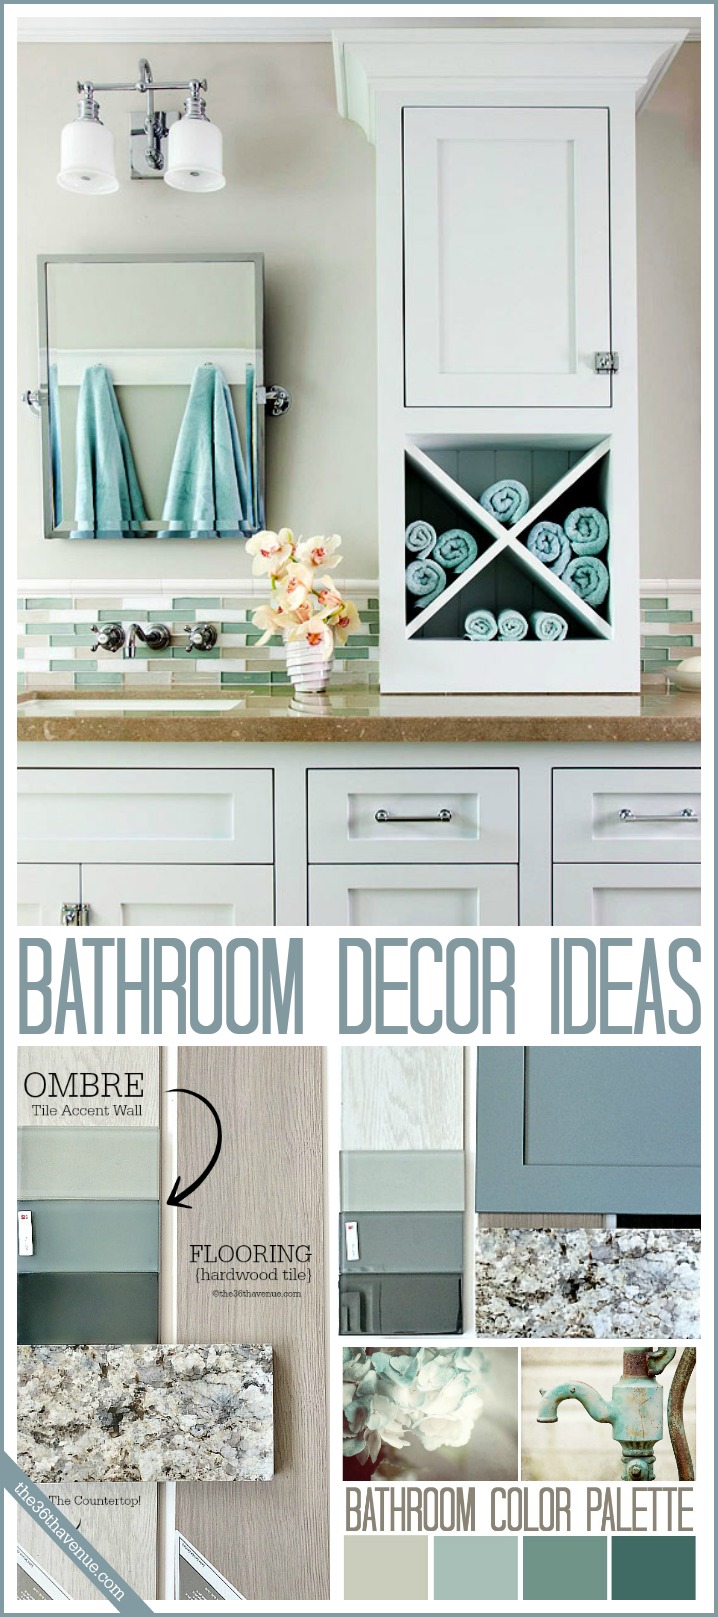 Bathroom Decor Ideas and Design Tips